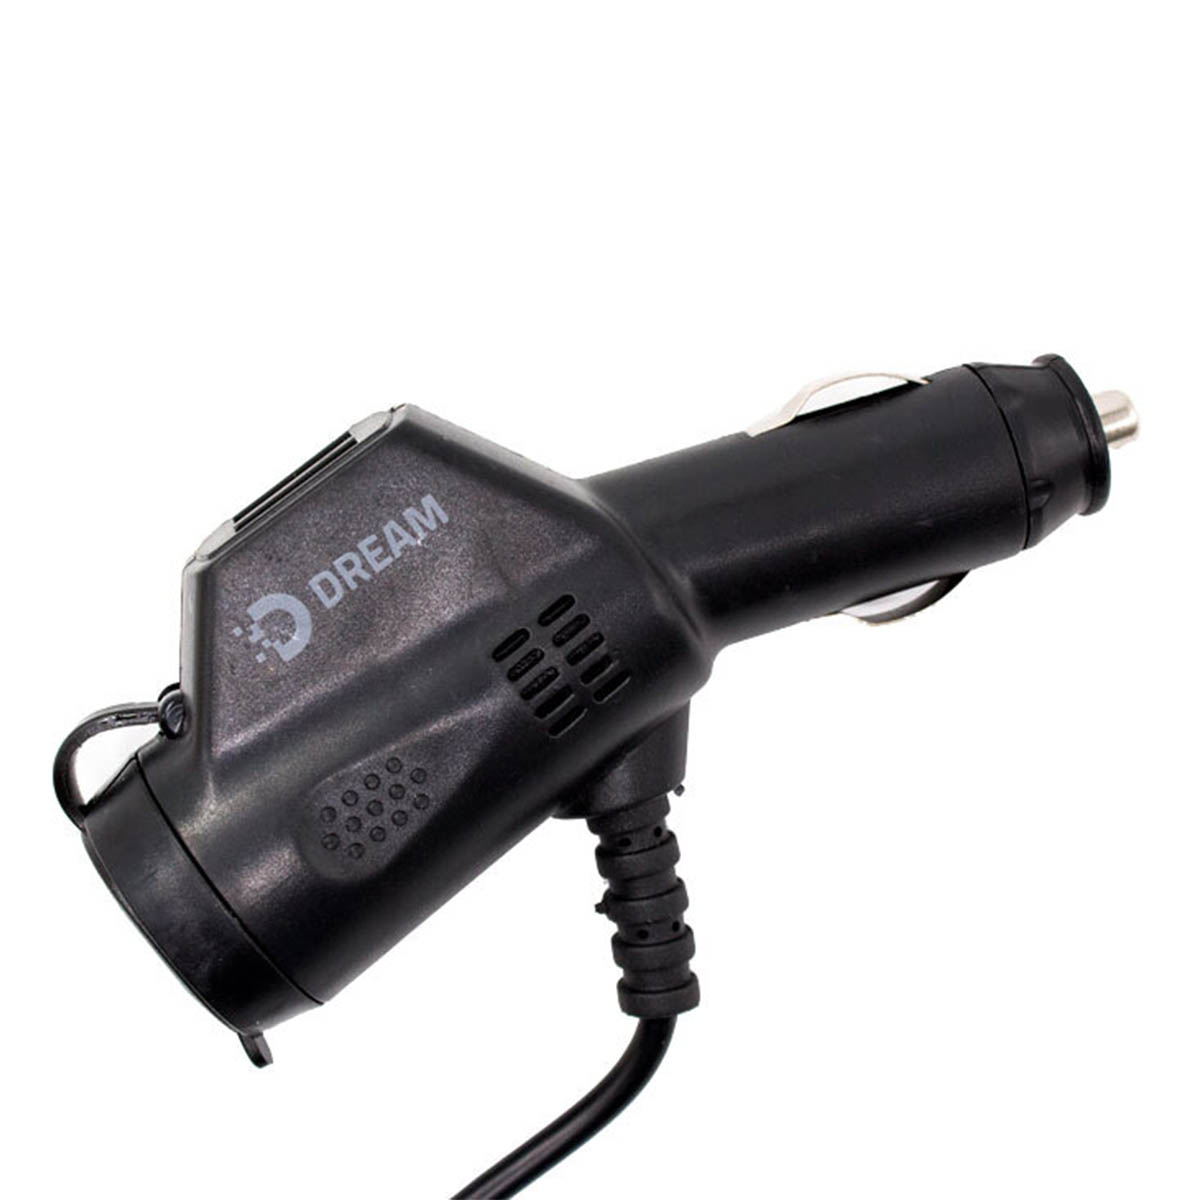 АЗУ (Автомобильное зарядное устройство) DREAM DRM-SM01 со встроенным кабелем Micro USB, 2.4A, 2 USB, длина 1.2 м, цвет черный